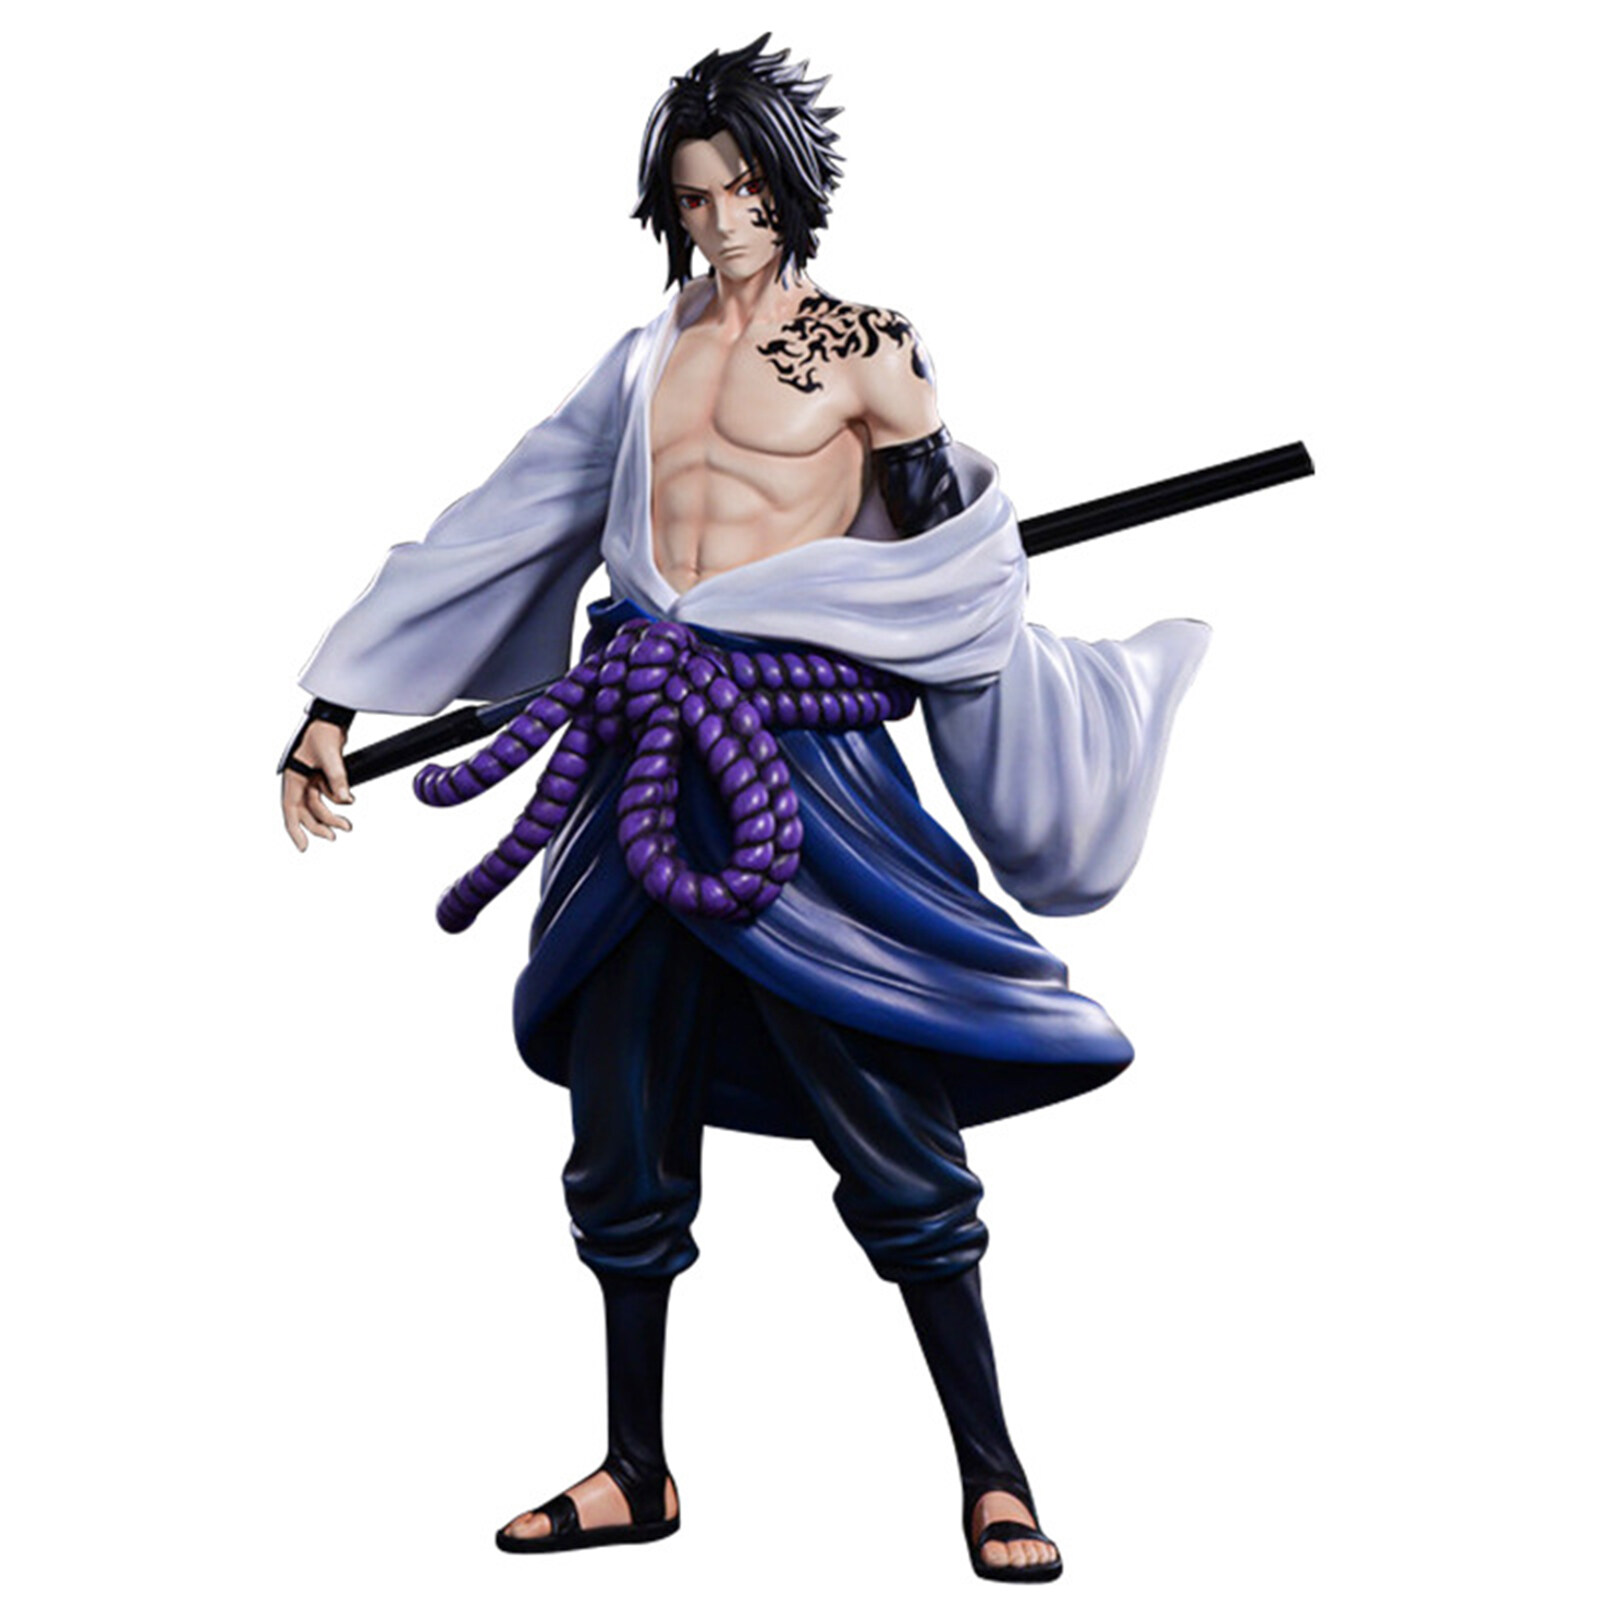 Bạn là người hâm mộ của nhân vật Sasuke trong Naruto? Hãy xem mô hình nhân vật Sasuke cực kỳ tuyệt vời này! Được tạo ra và hoàn thiện một cách chính xác, mô hình này sẽ giúp cho nhân vật của bạn trở nên sống động hơn bao giờ hết.